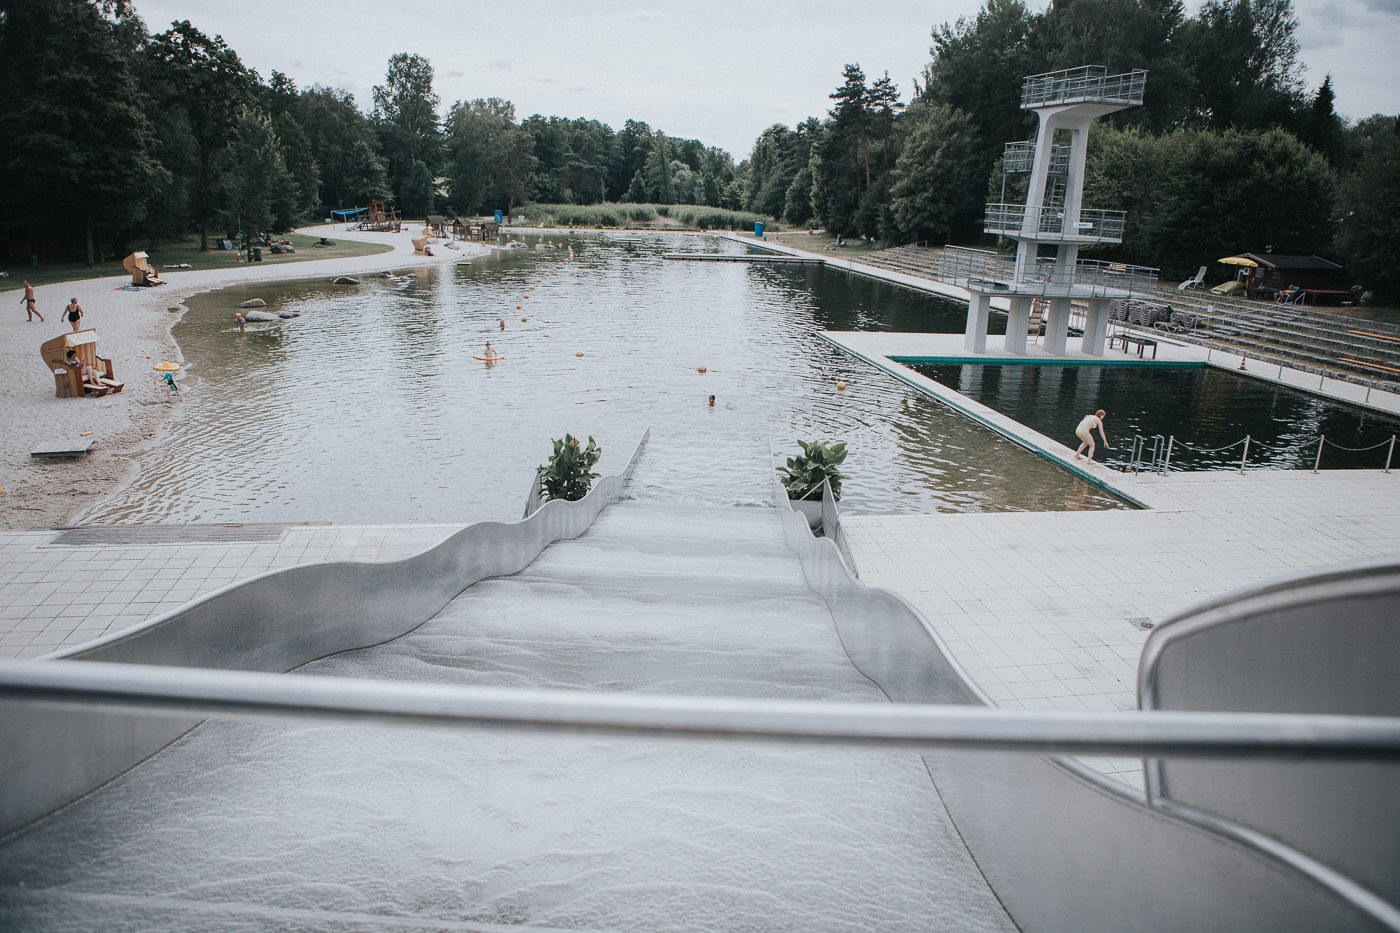 Water slide in Marktredwitz Schwimmbad